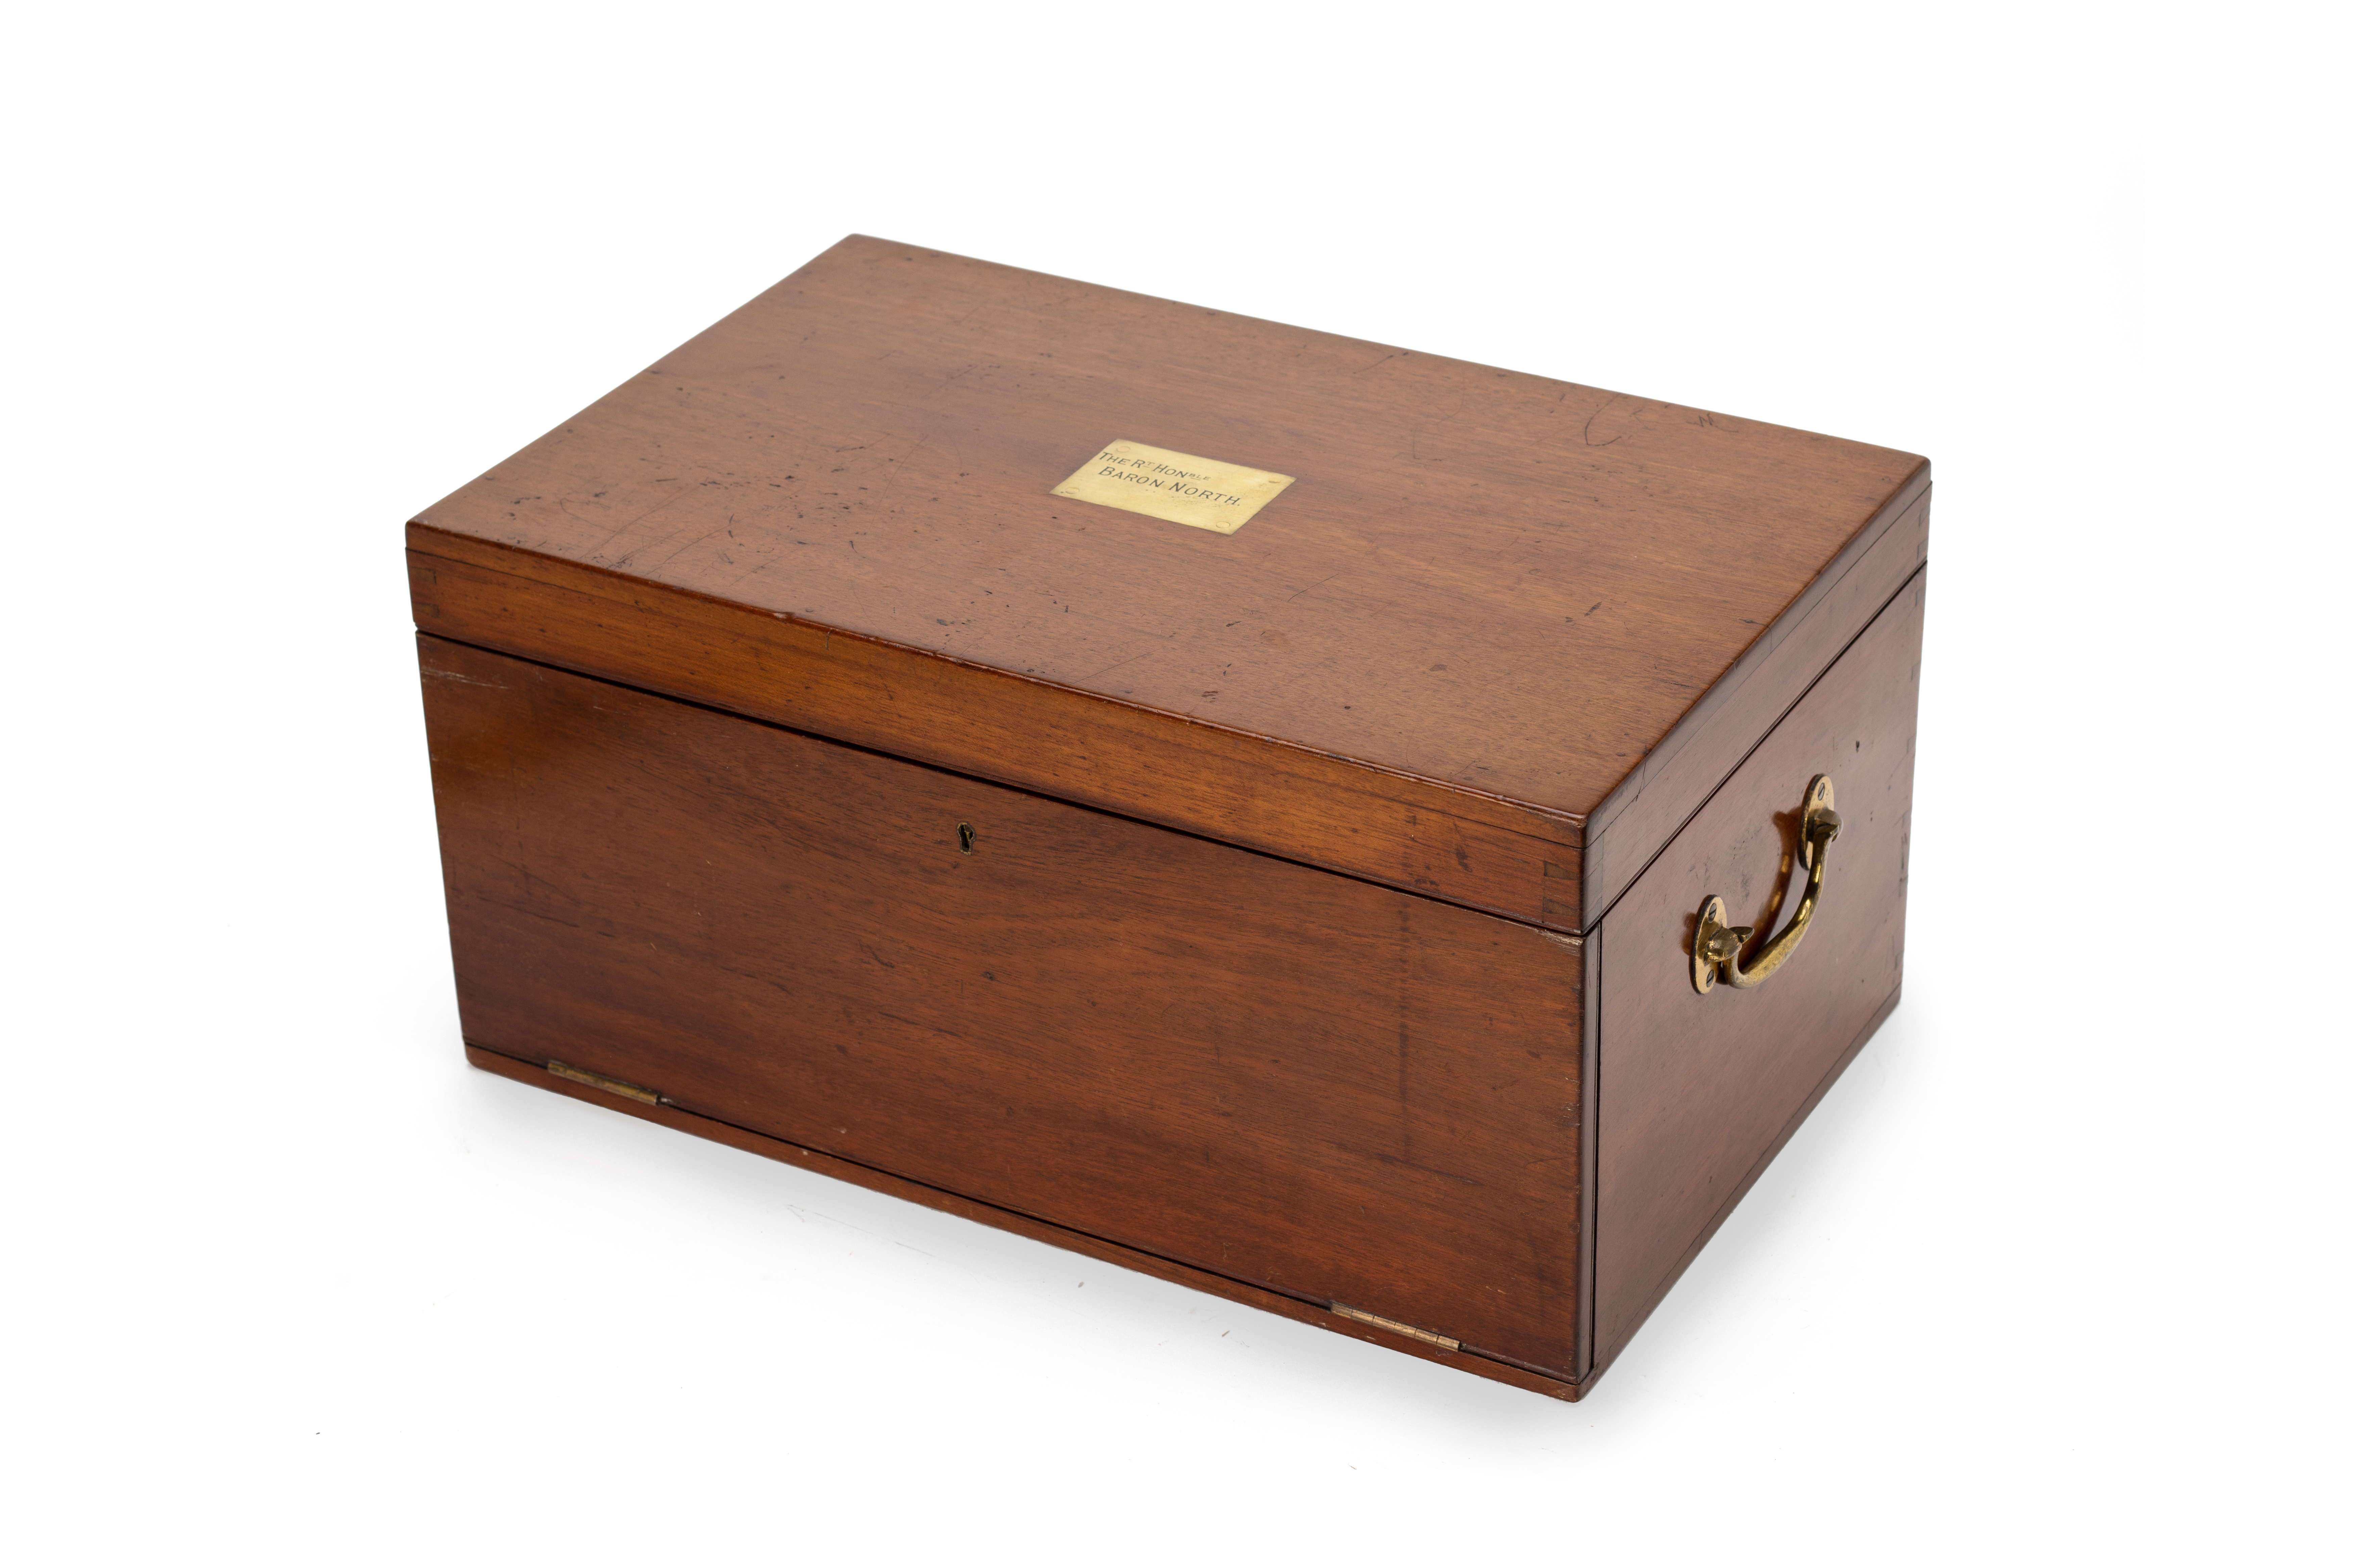 AN EARLY 20TH CENTURY MAHOGANY BOX